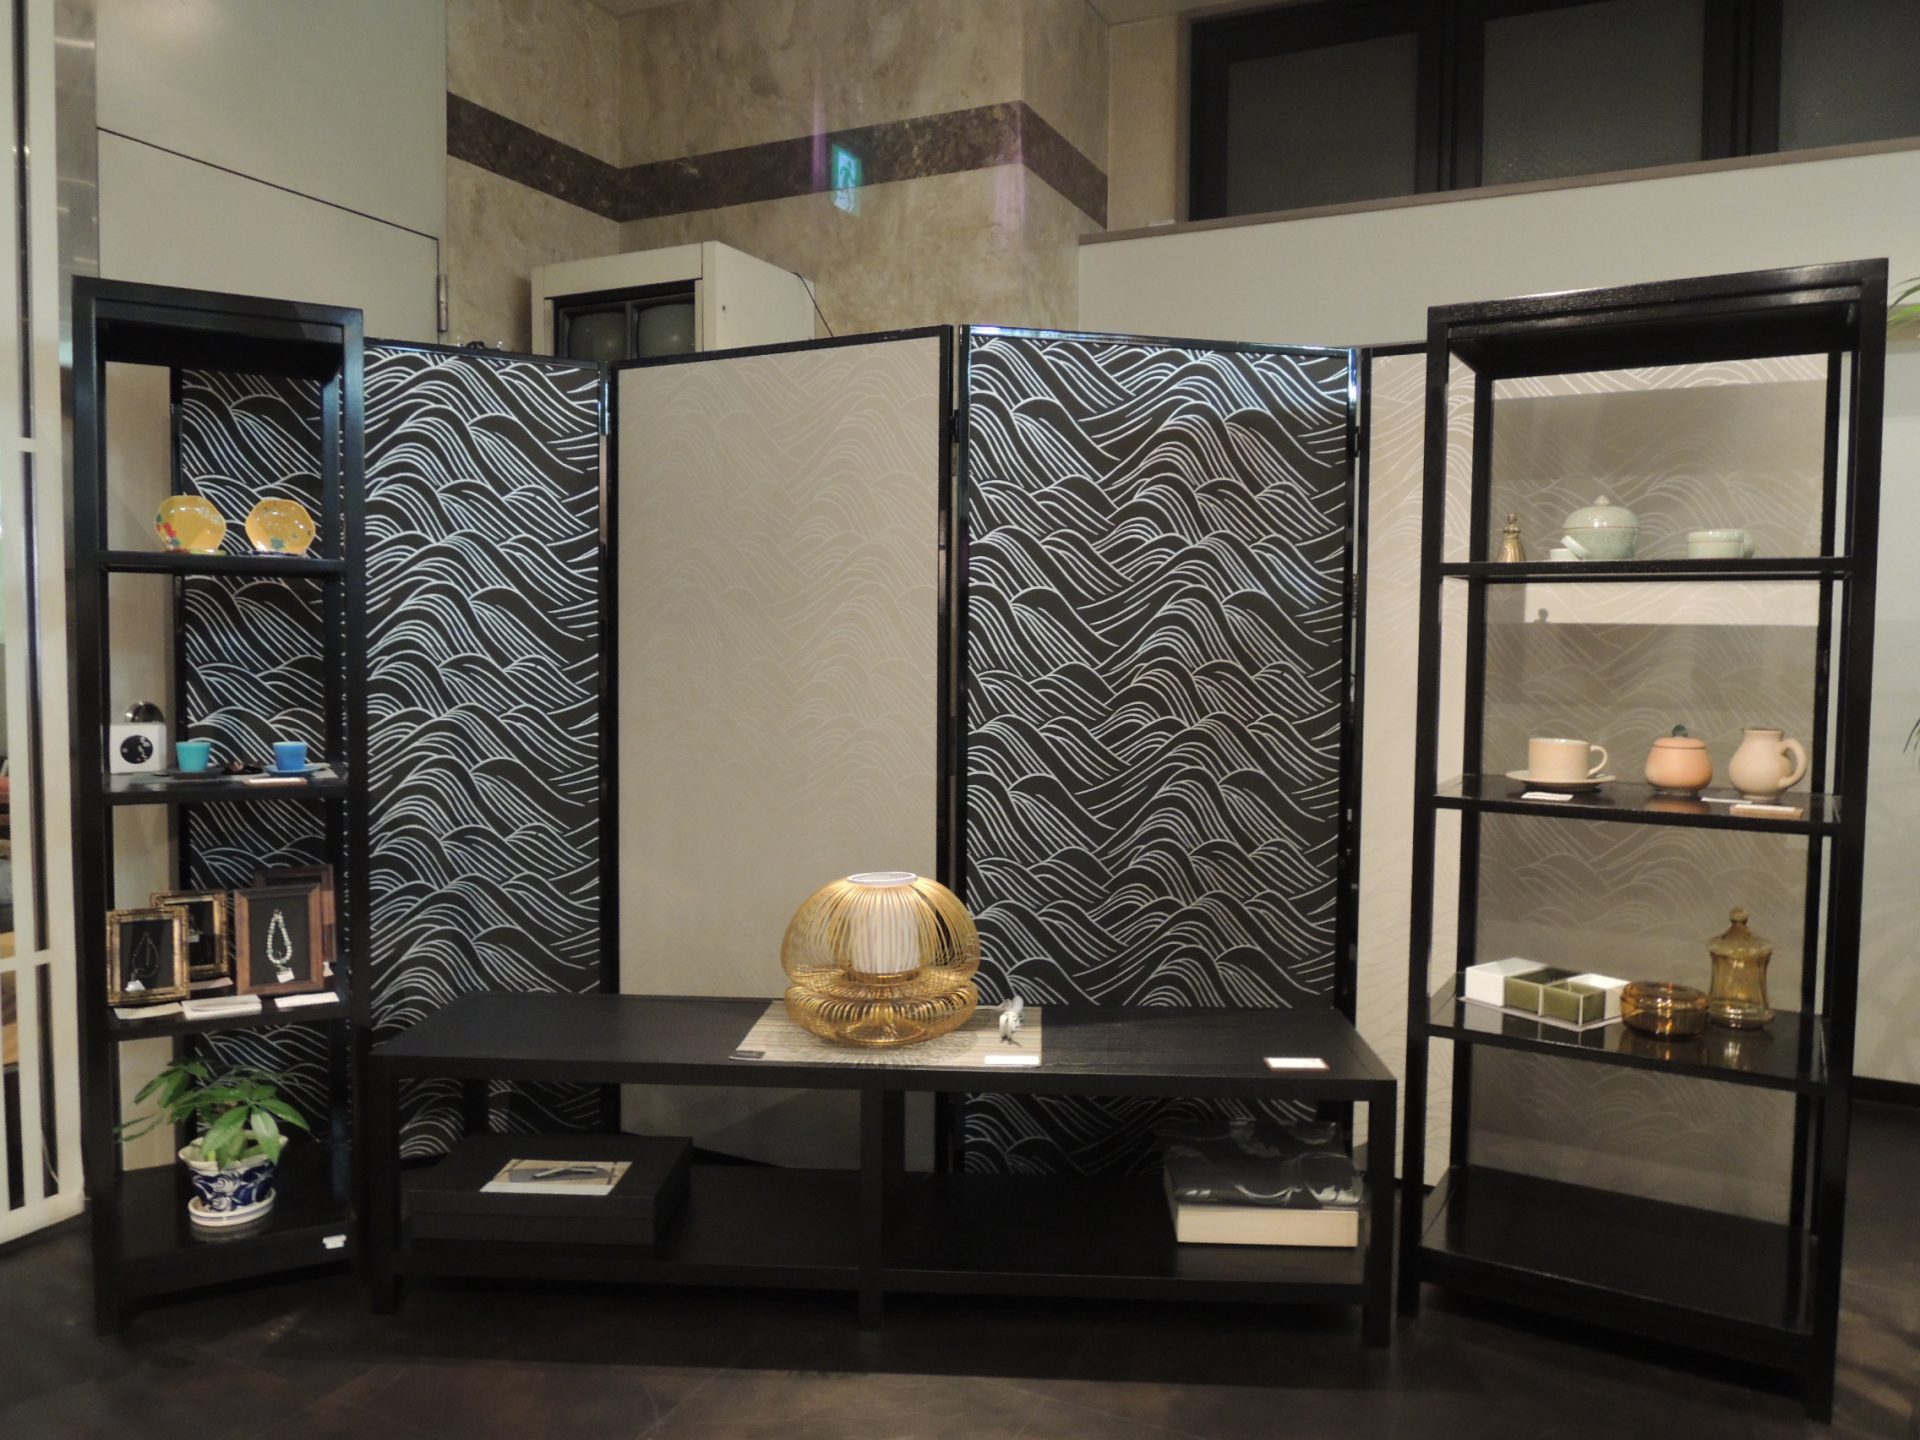 「京唐紙」を使用した屏風と襖をインテリアにアクセントに。大阪マルキン家具で展示